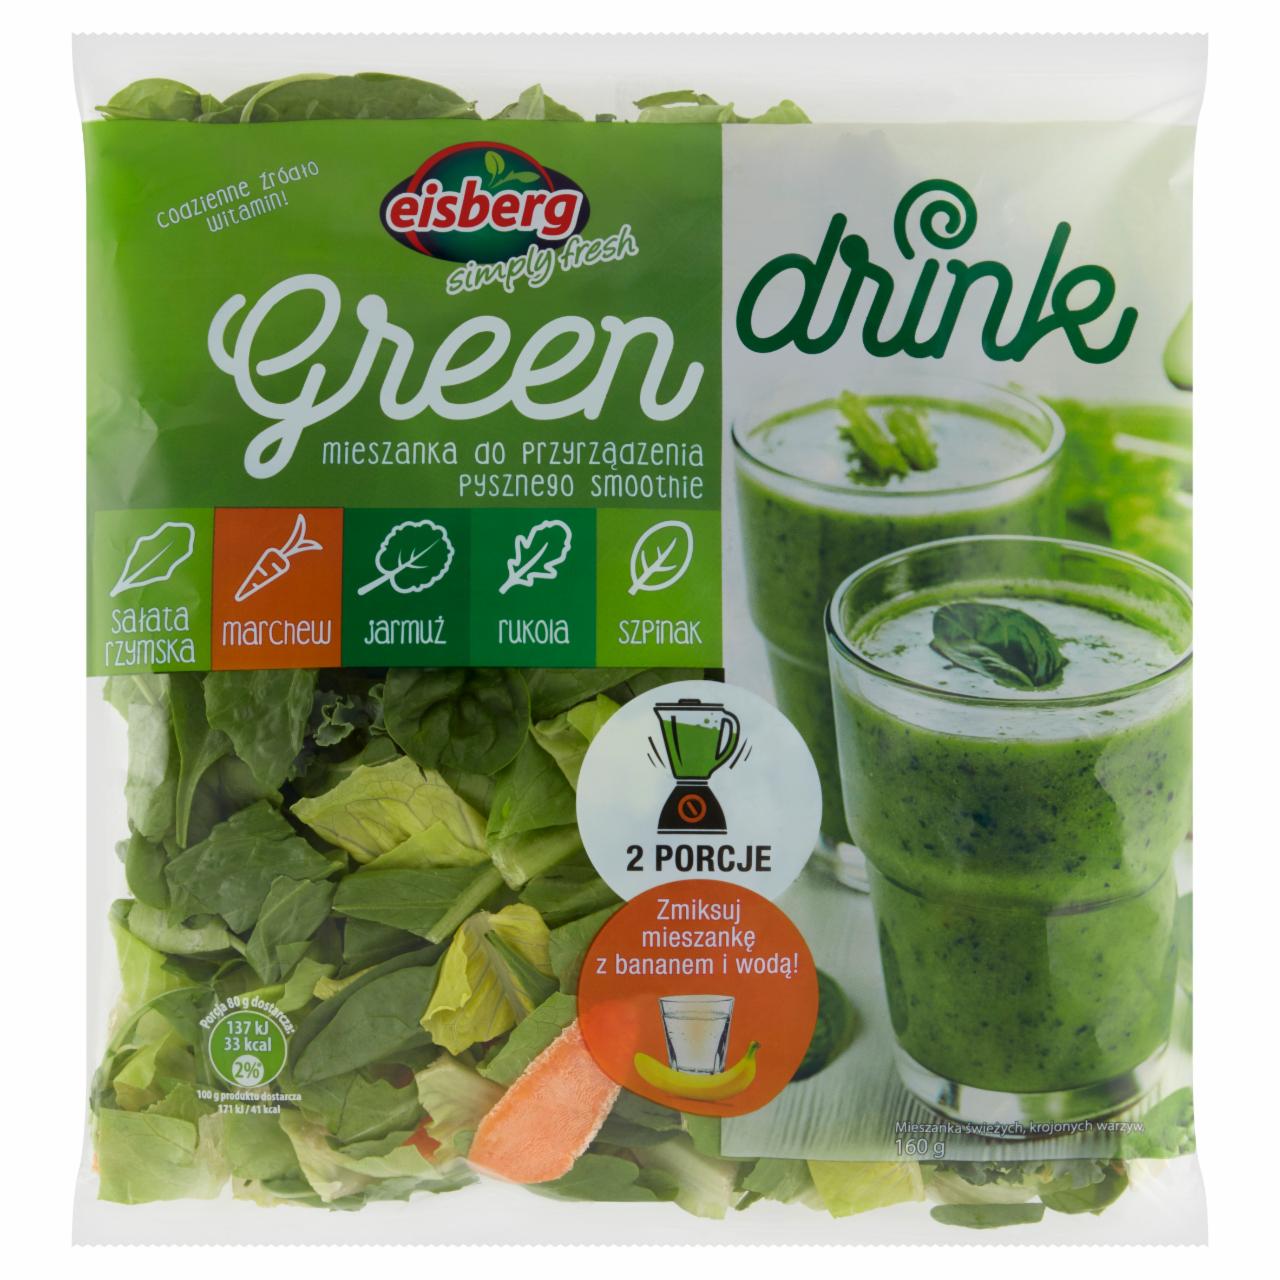 Zdjęcia - Eisberg Green Drink Mieszanka do przyrządzenia pysznego smoothie